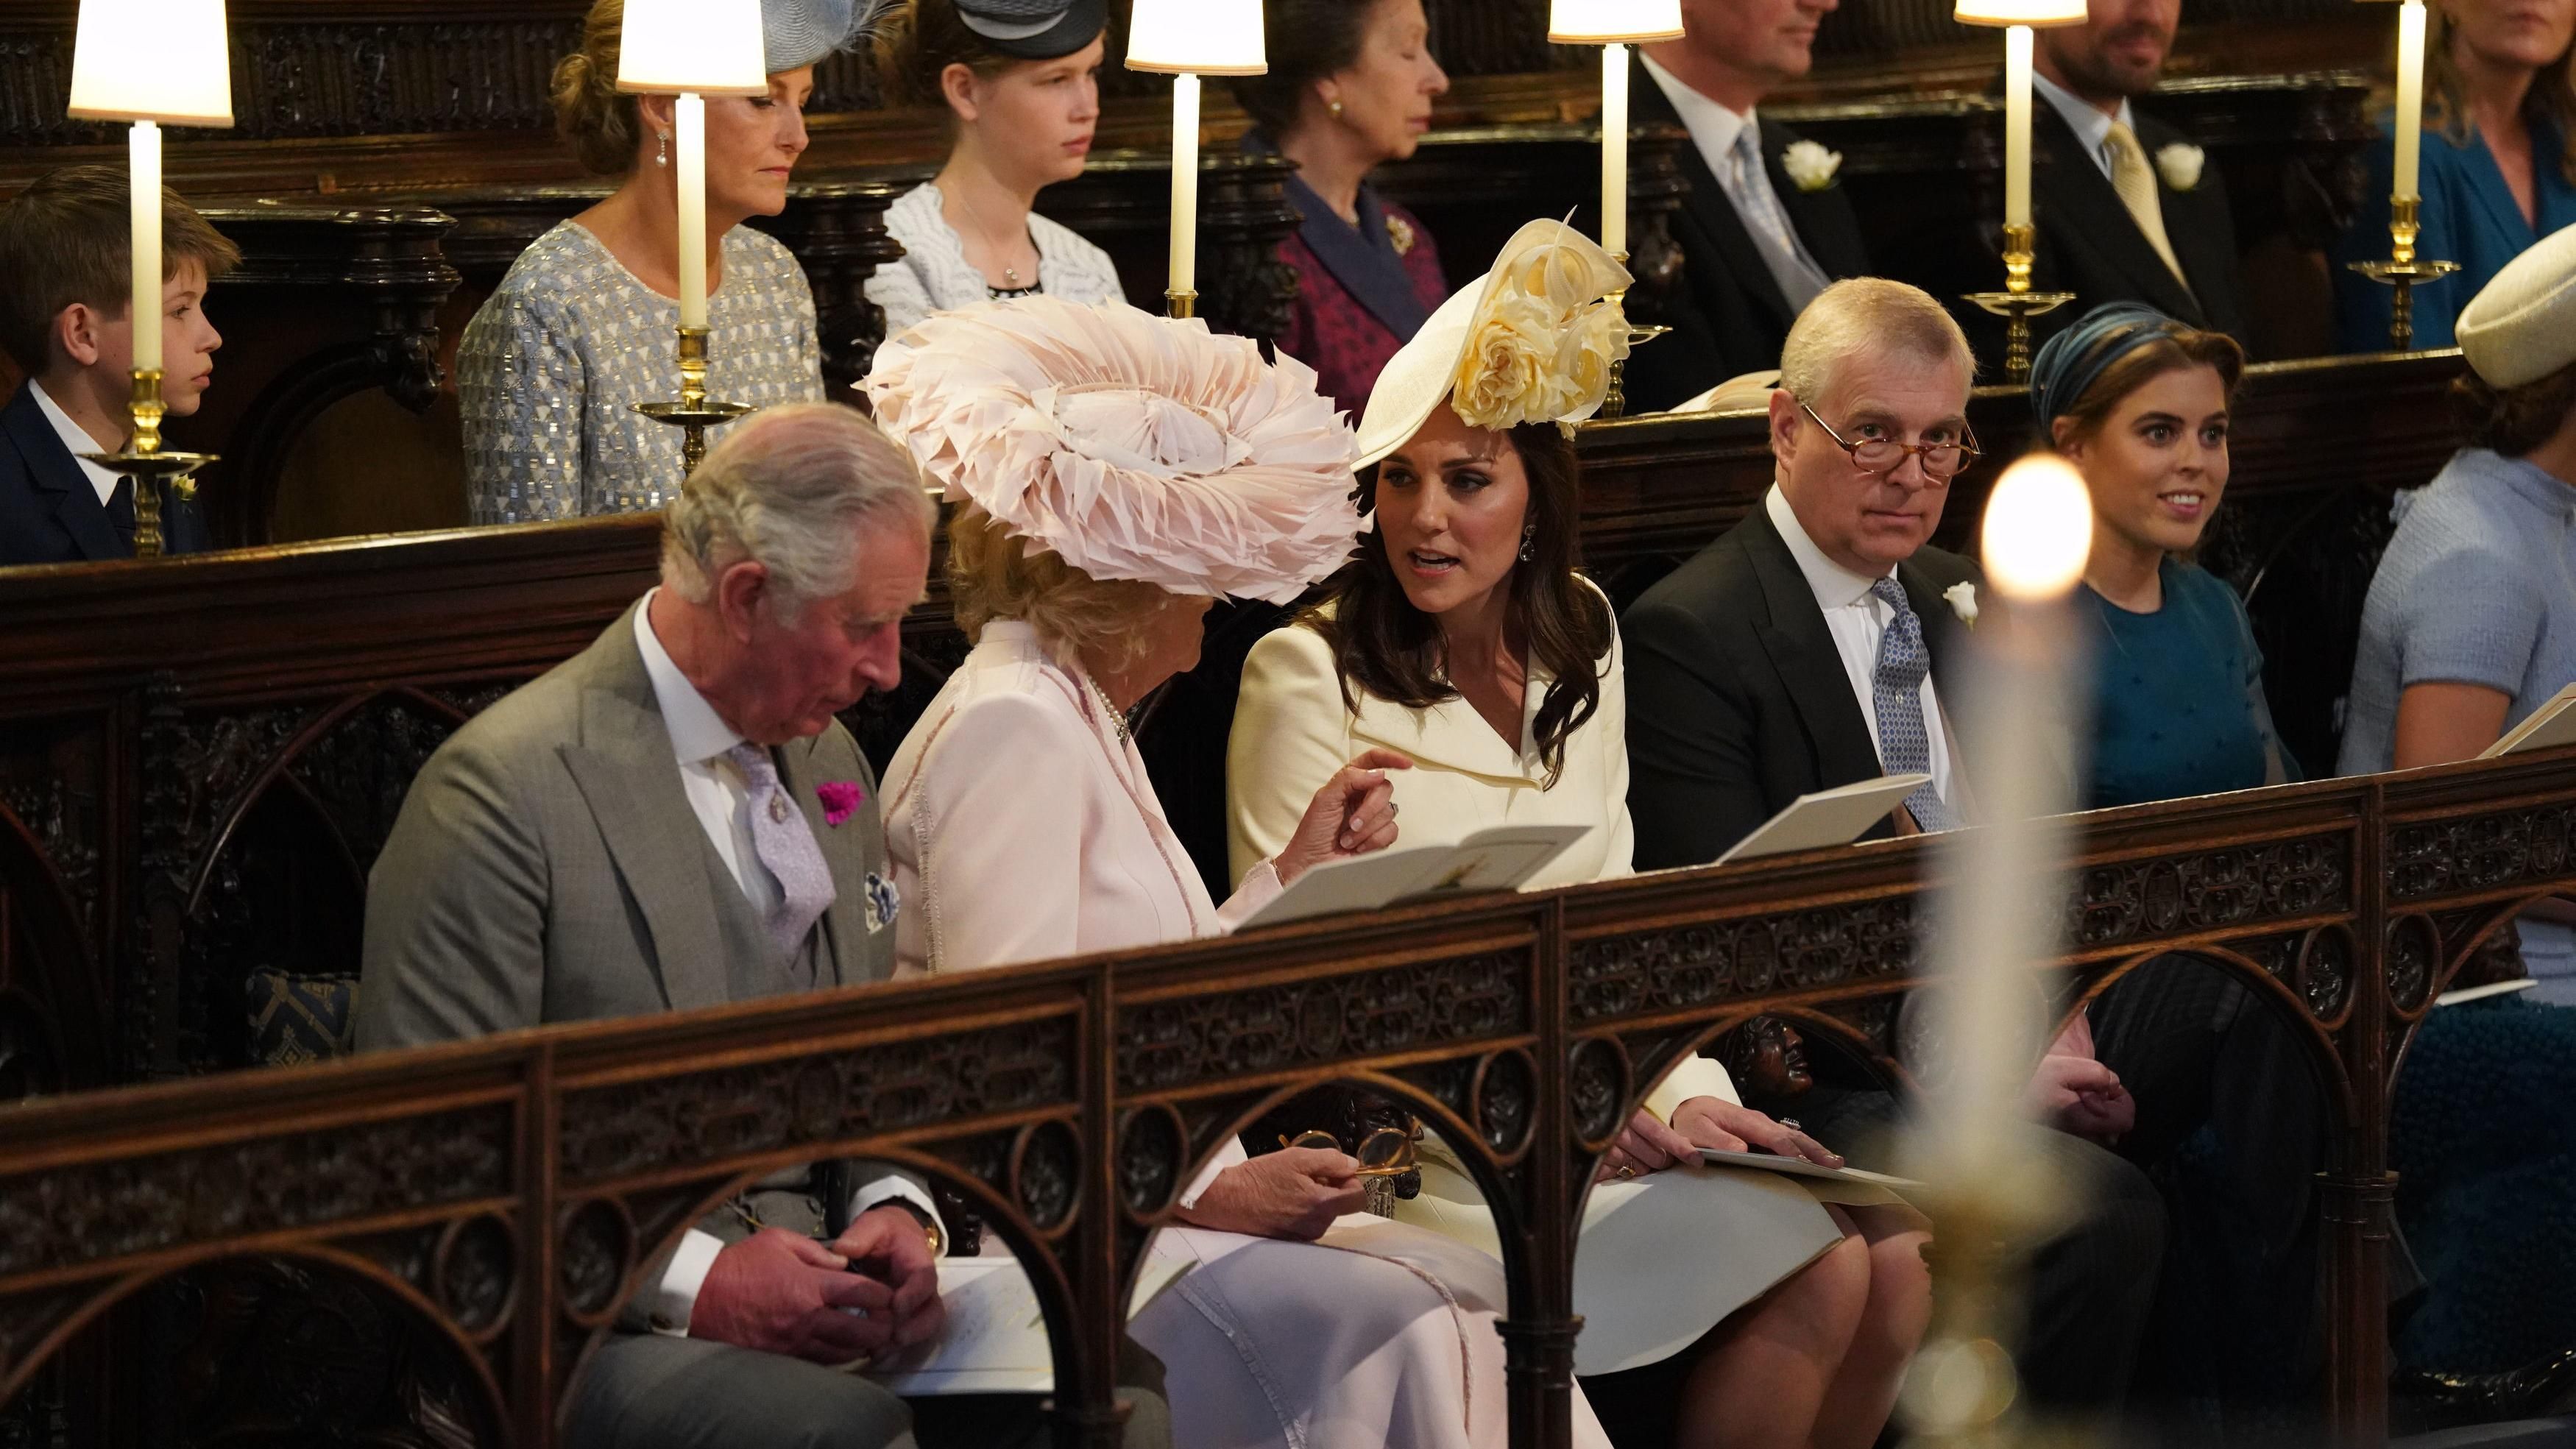 Єлизавета II, Кейт Міддлтон, принц Чарльз та інші прибули на королівське весілля: фото